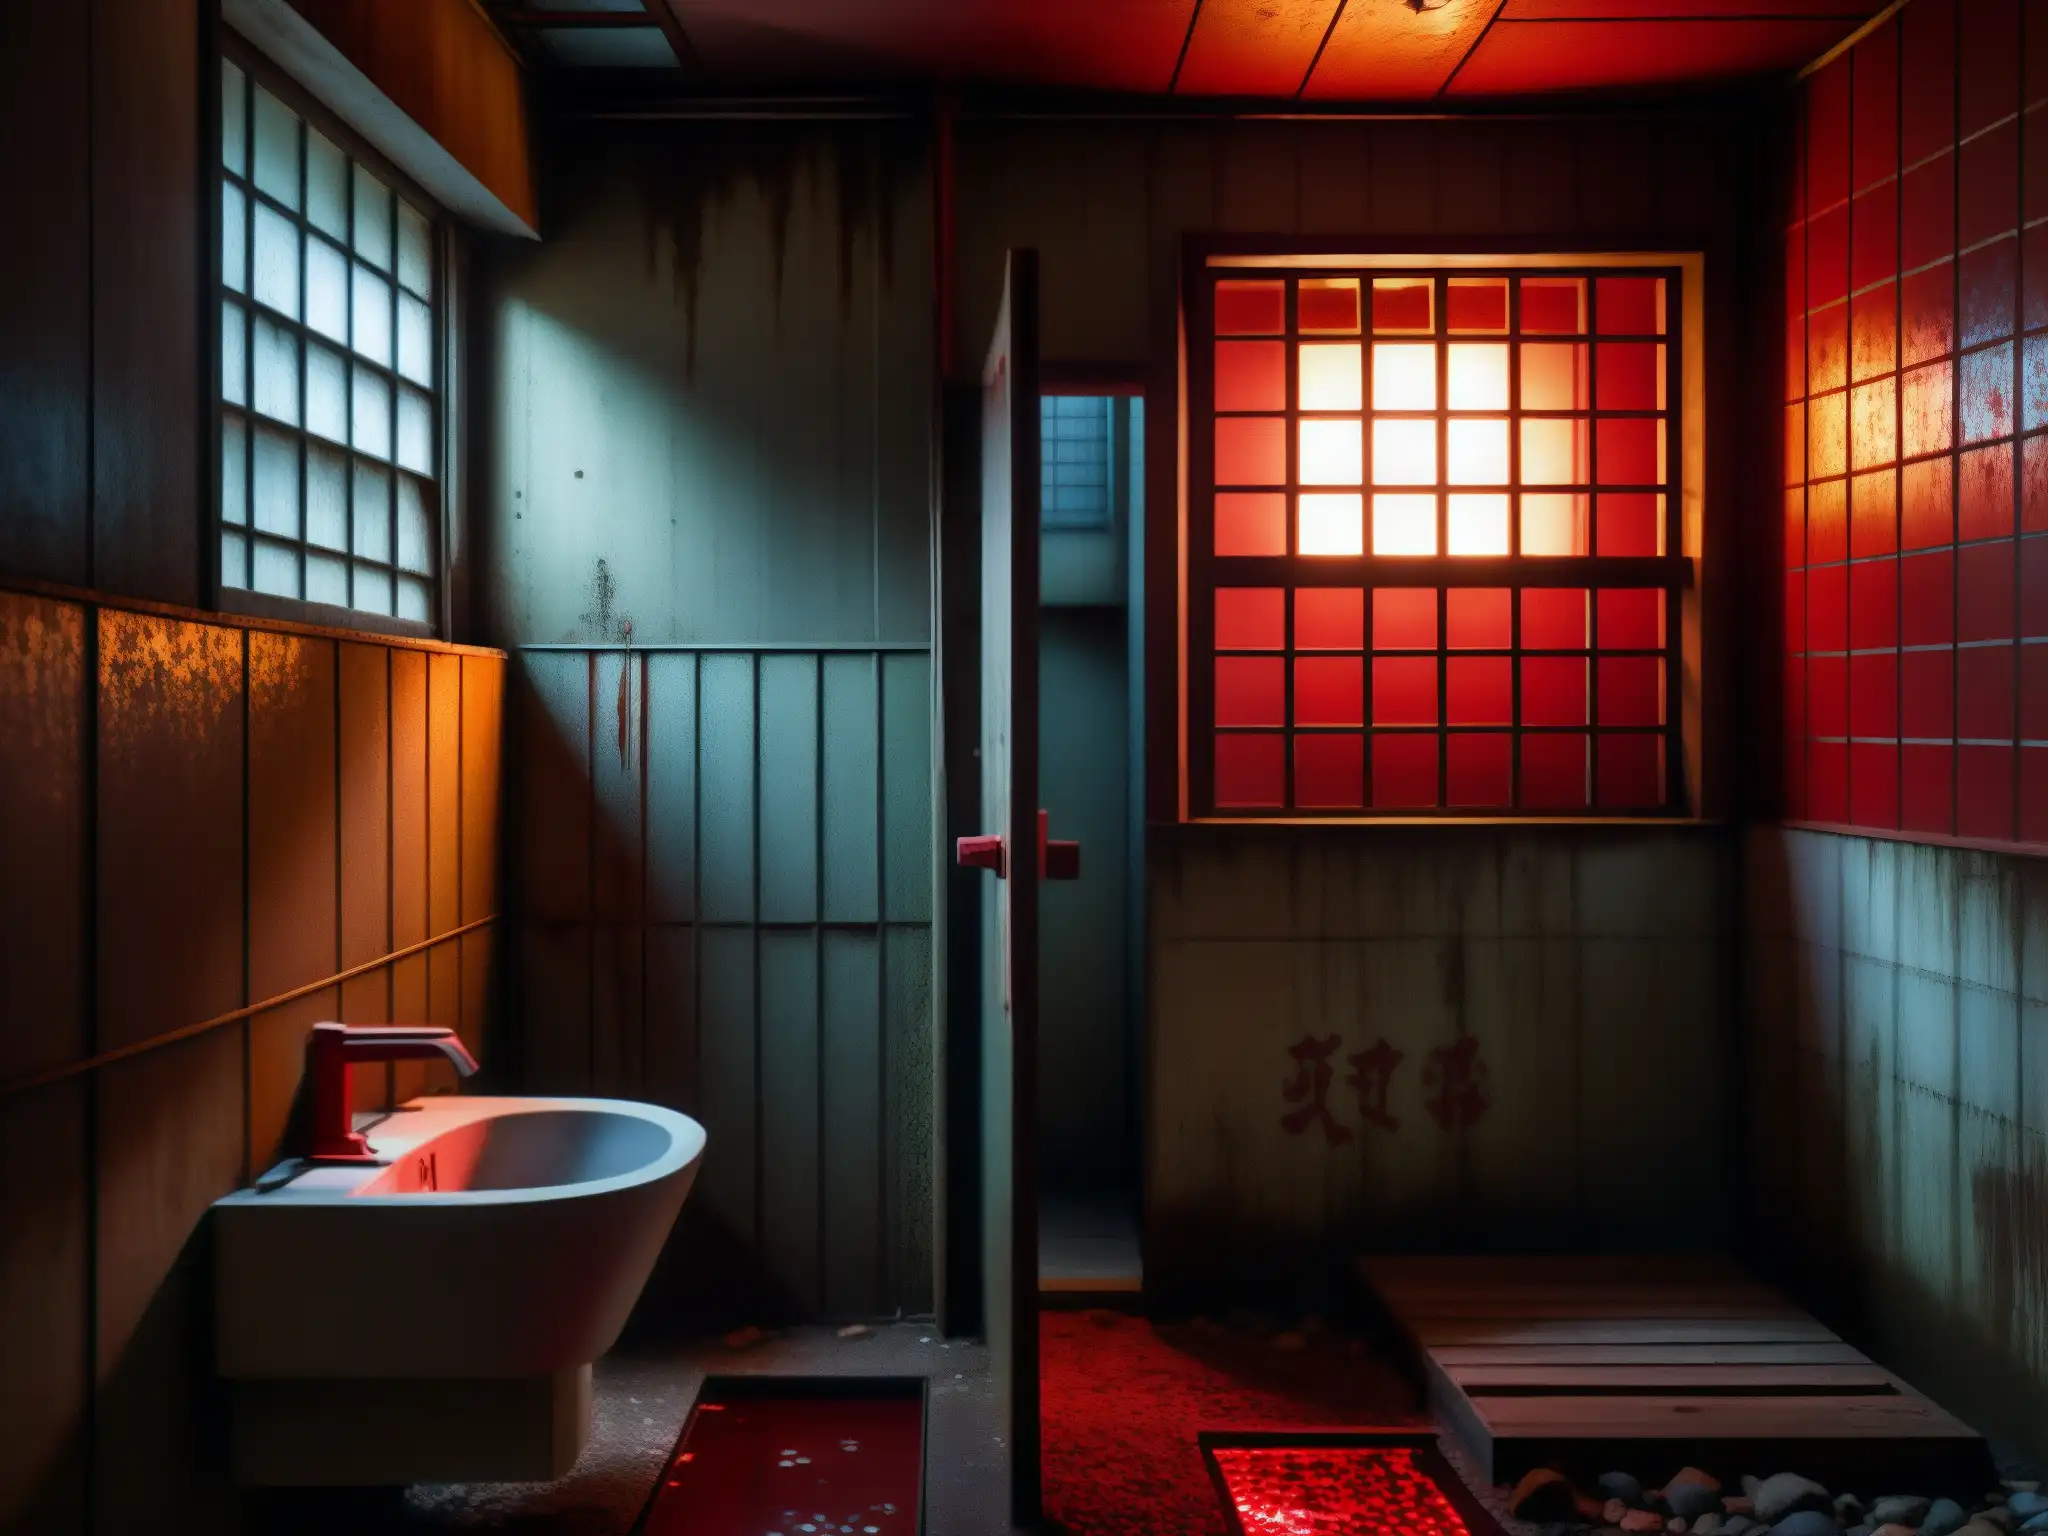 Ambiente inquietante en un baño abandonado en Japón, con graffiti rojo de Aka Manto leyenda urbana